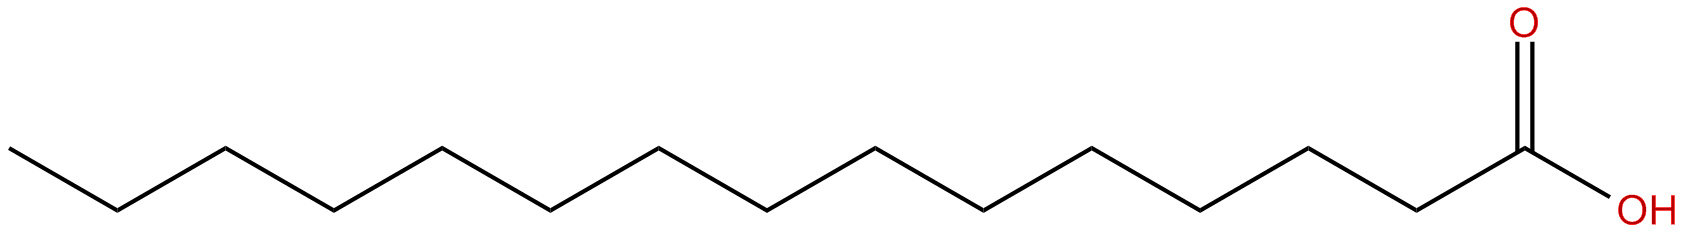 Image of pentadecanoic acid